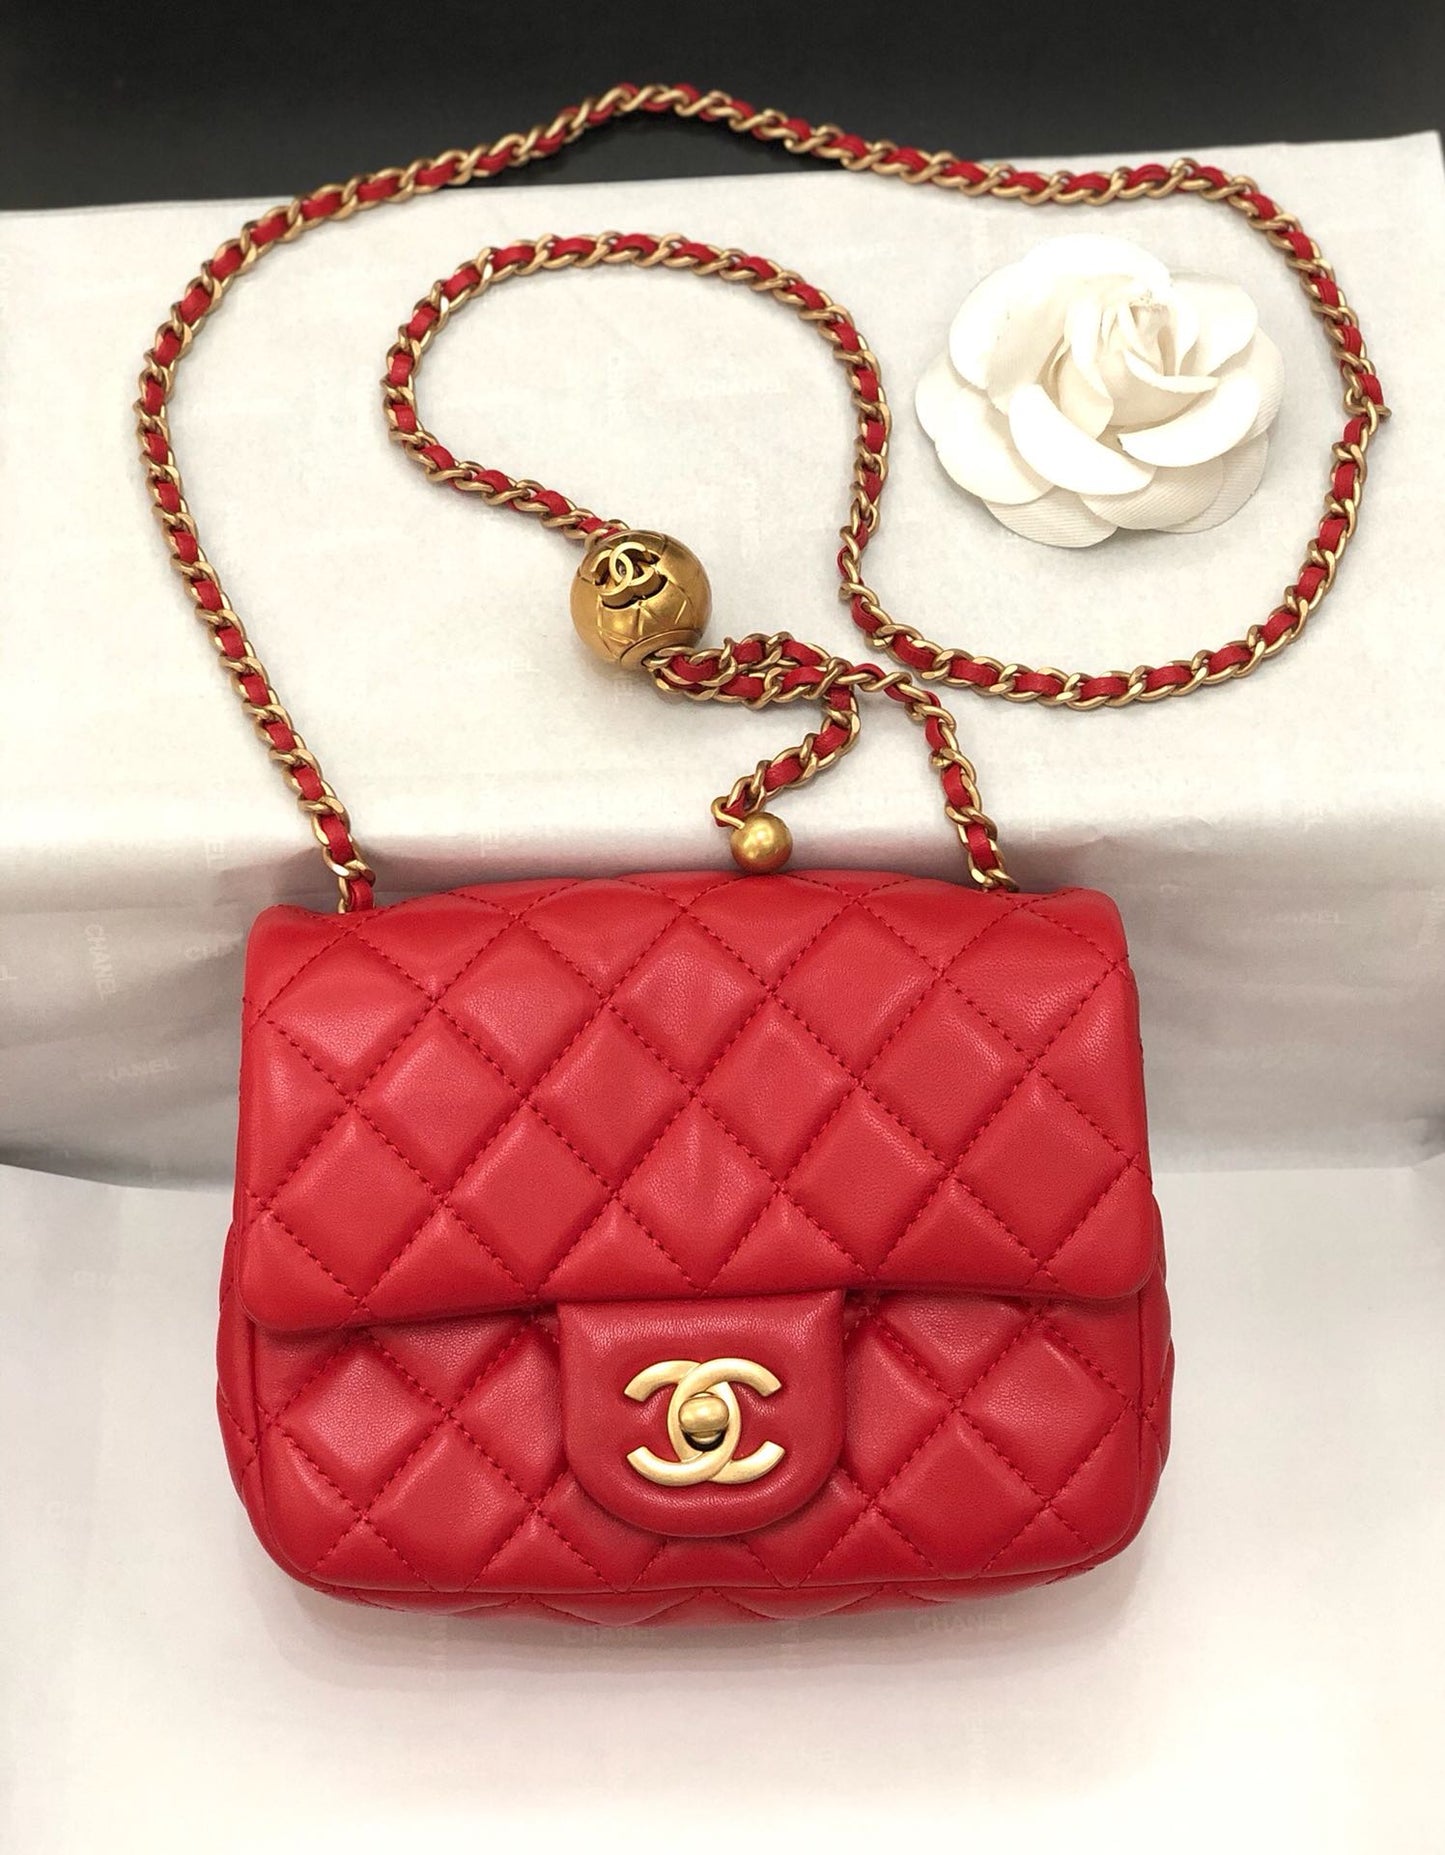 Chanel Mini Flap Bag